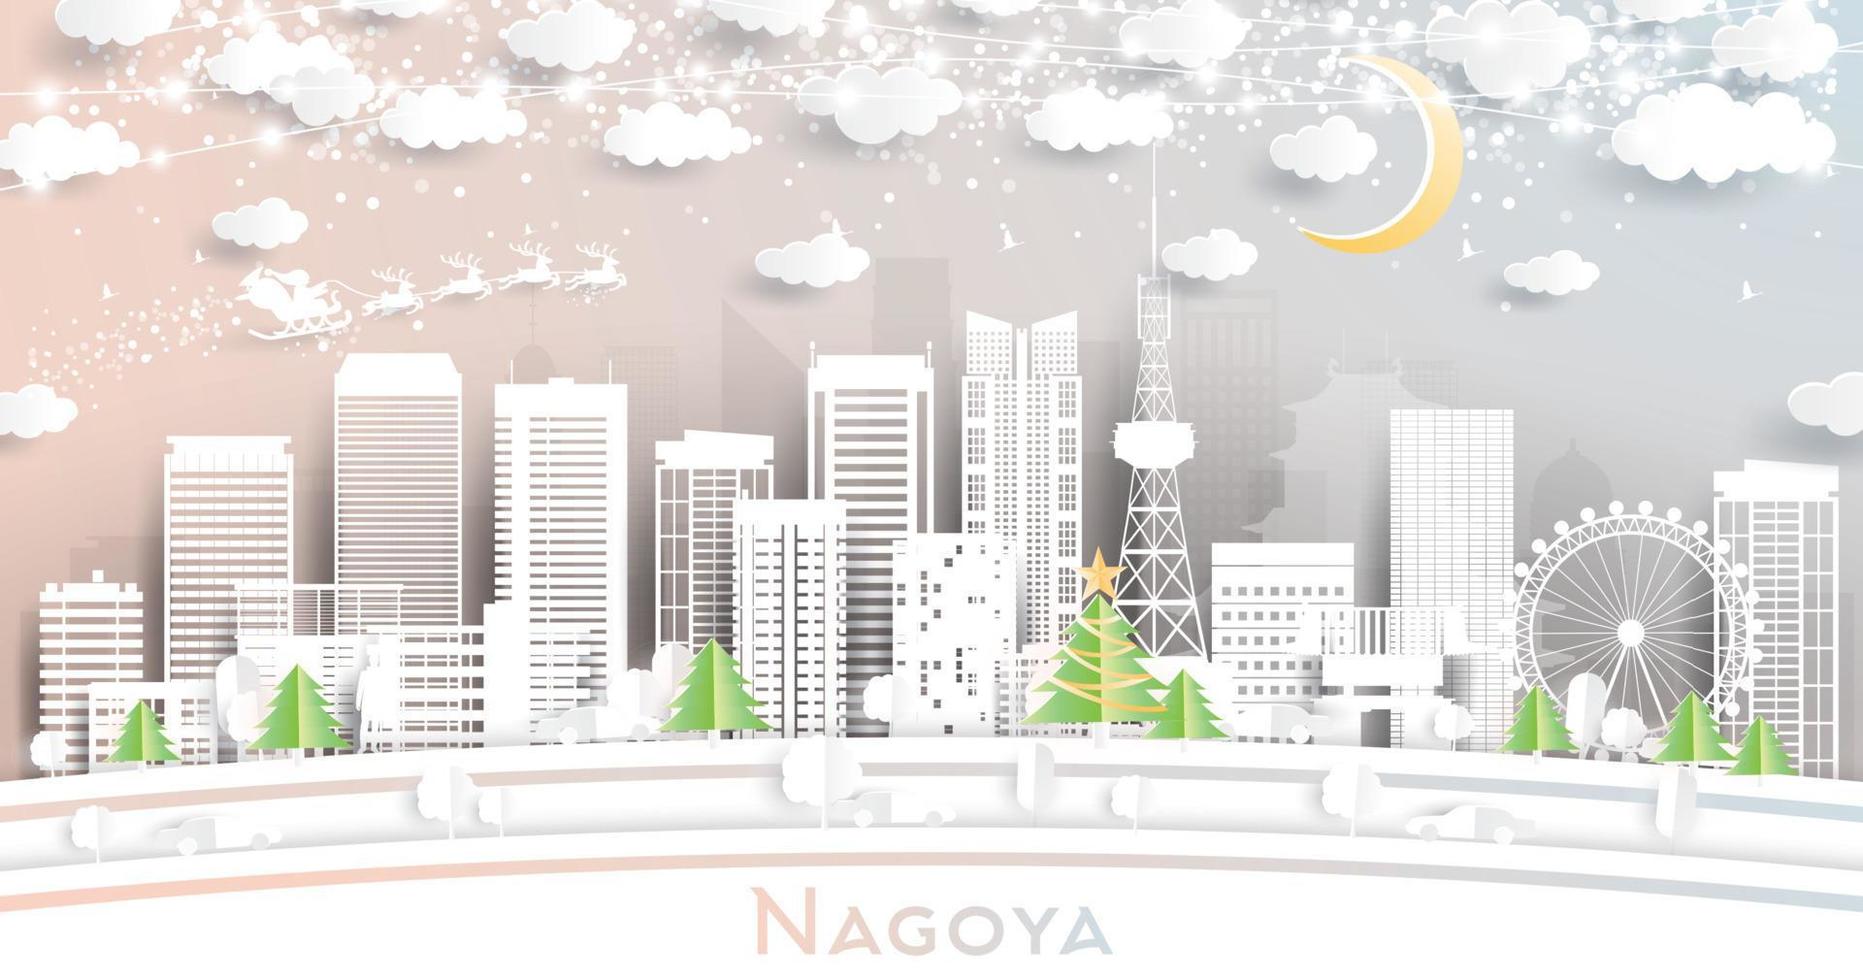 nagoya japan stad horisont i papper skära stil med snöflingor, måne och neon krans. vektor